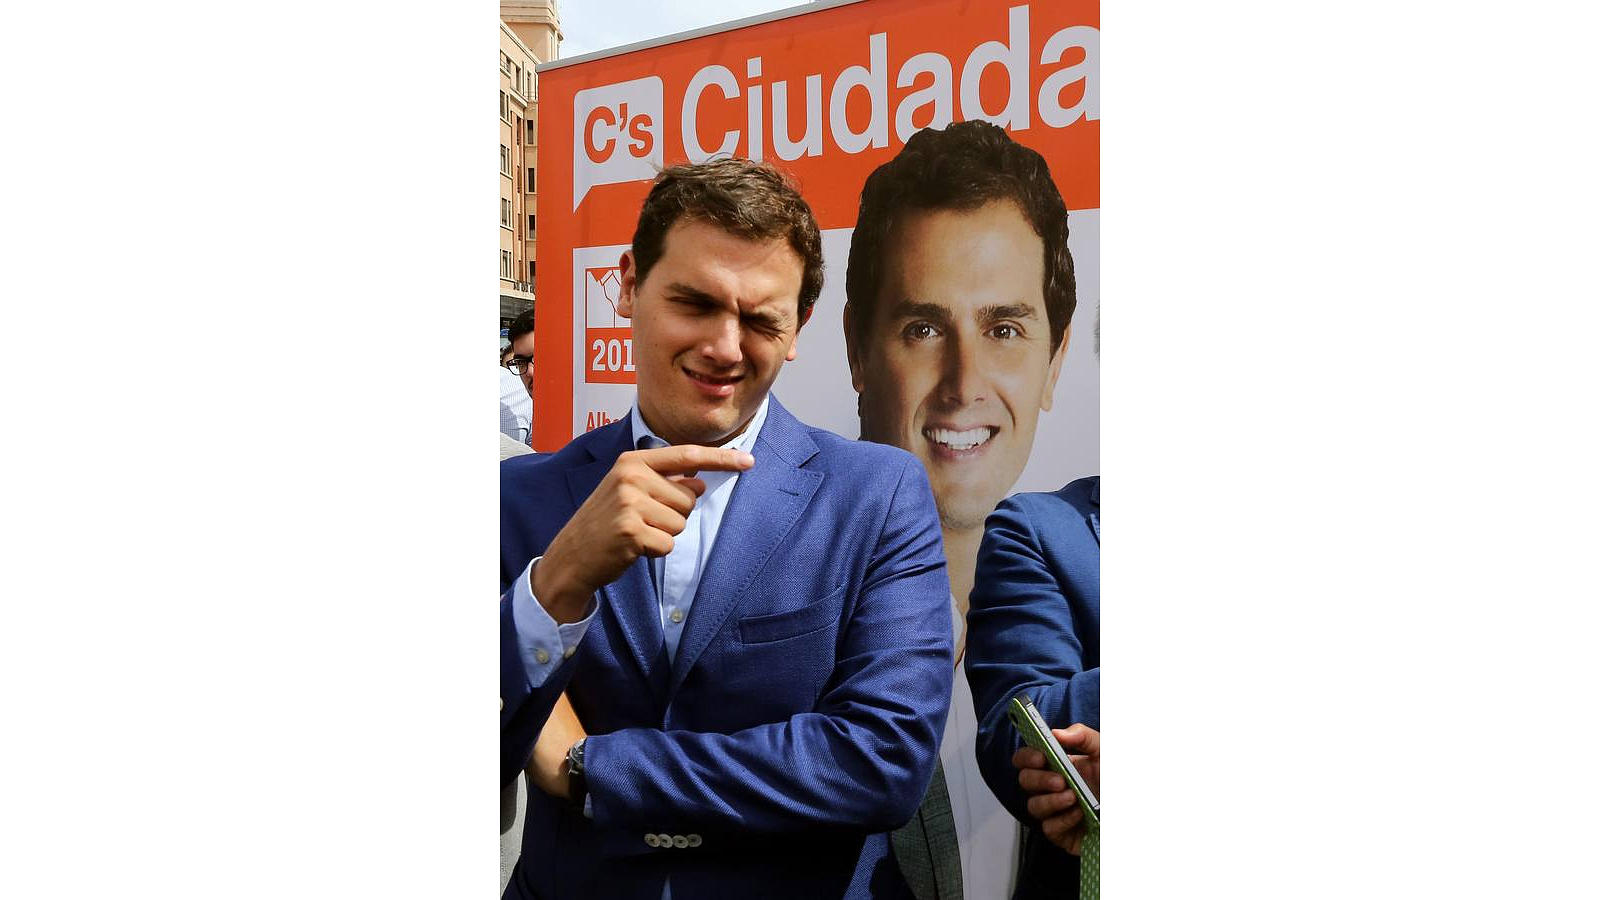 El líder de Ciudadanos, Albert Rivera, hace un guiño a su cartel electoral